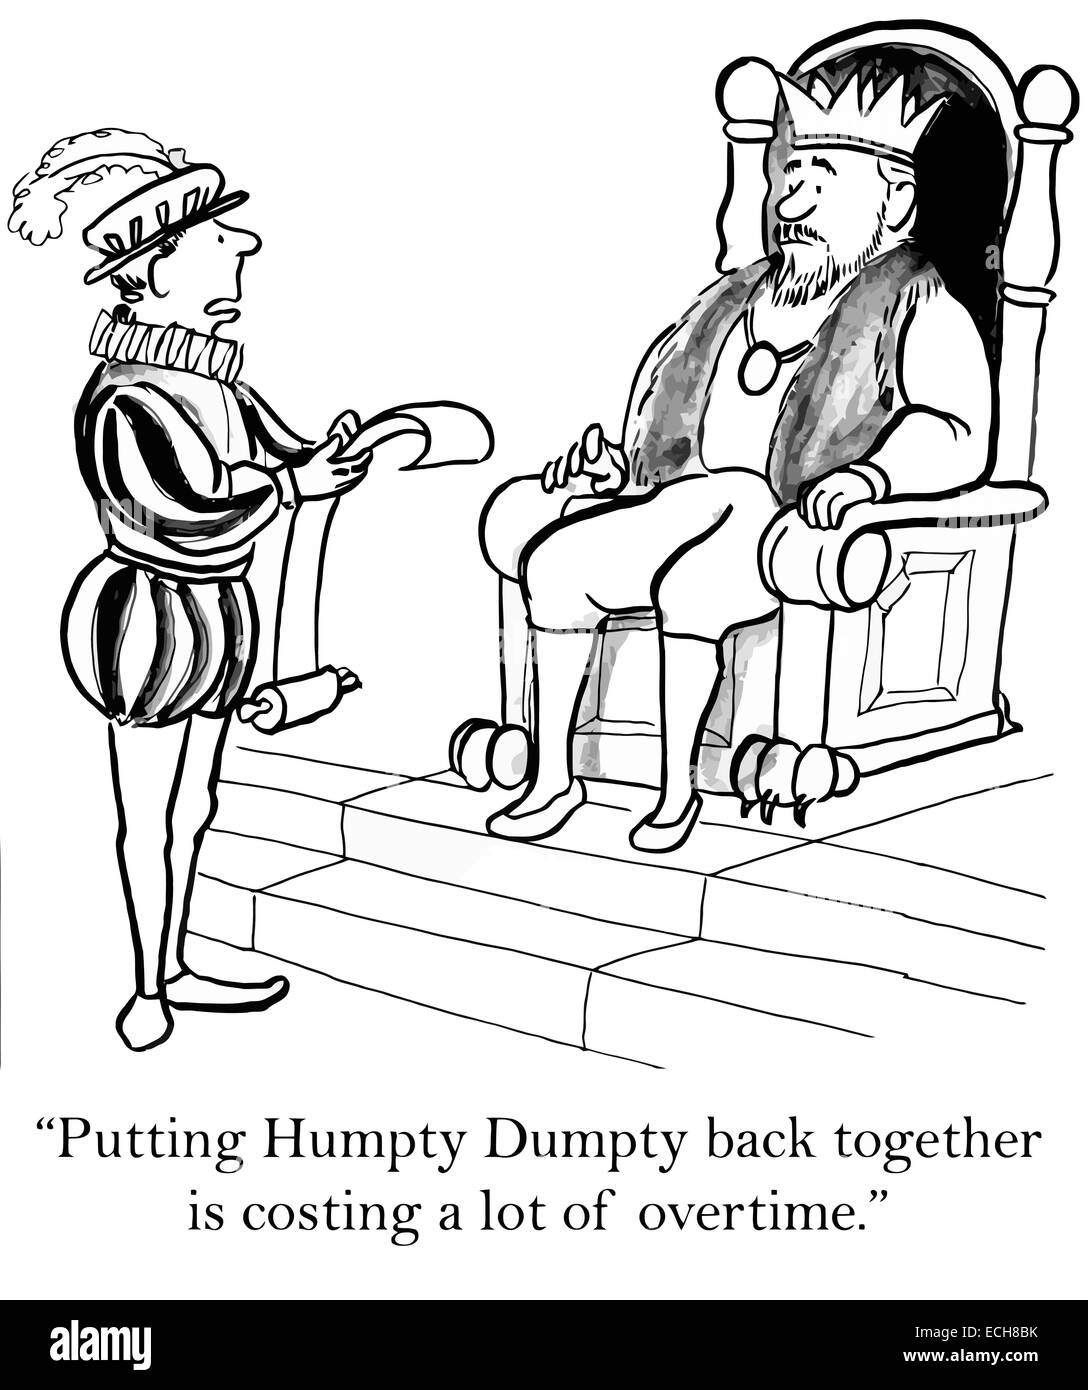 'Putting Humpty Dumpty est de retour ensemble, coûte beaucoup d'heures supplémentaires." Illustration de Vecteur